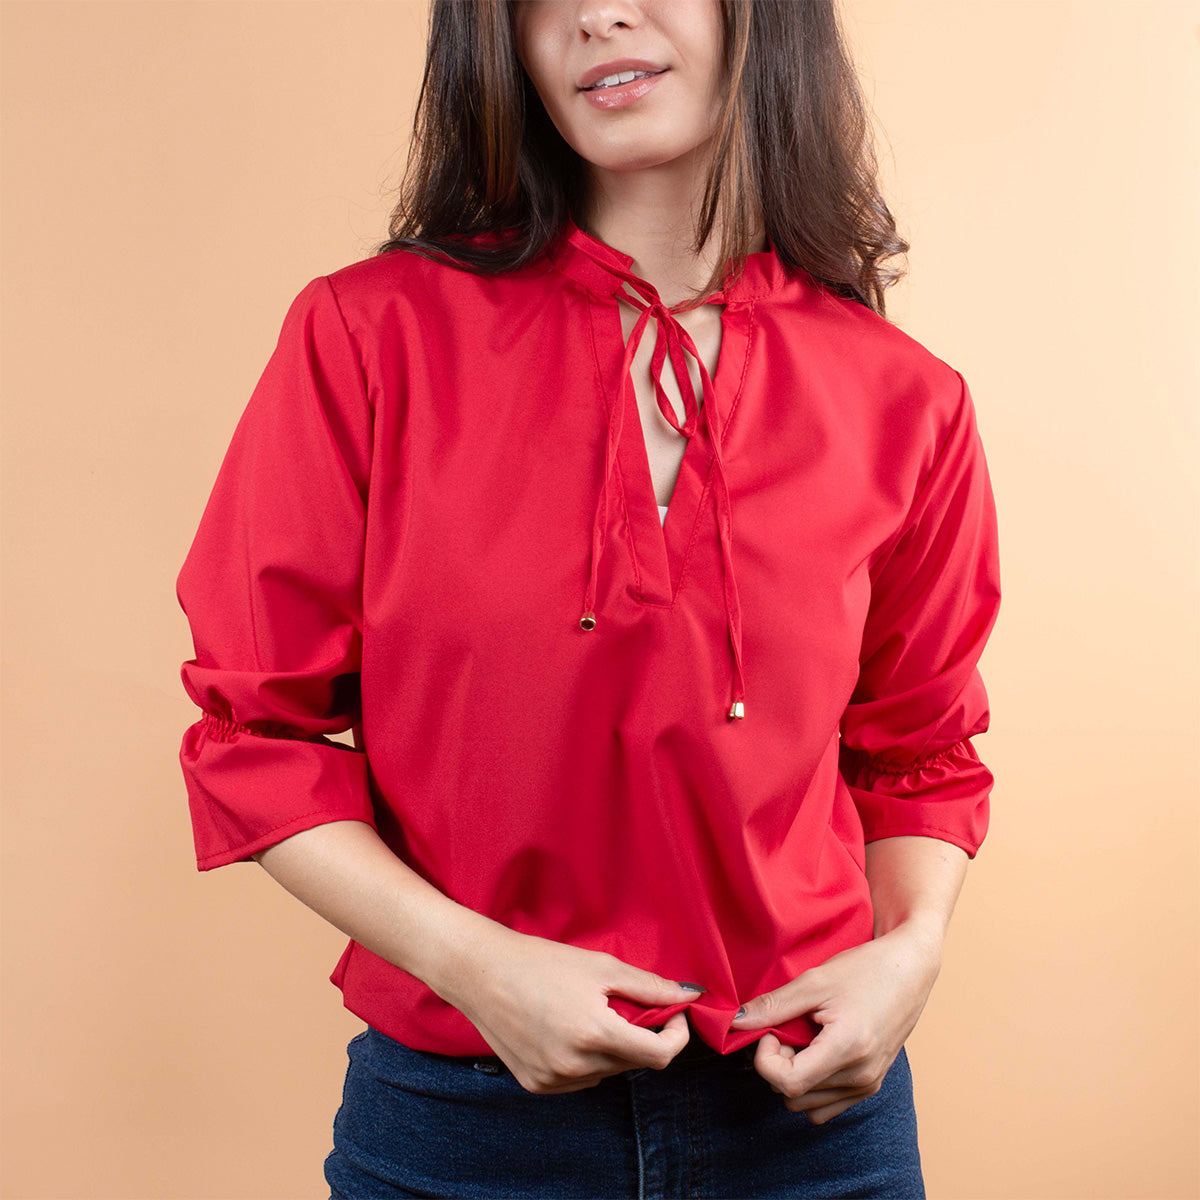 Blusa color rojo con moño ajustable en cuello